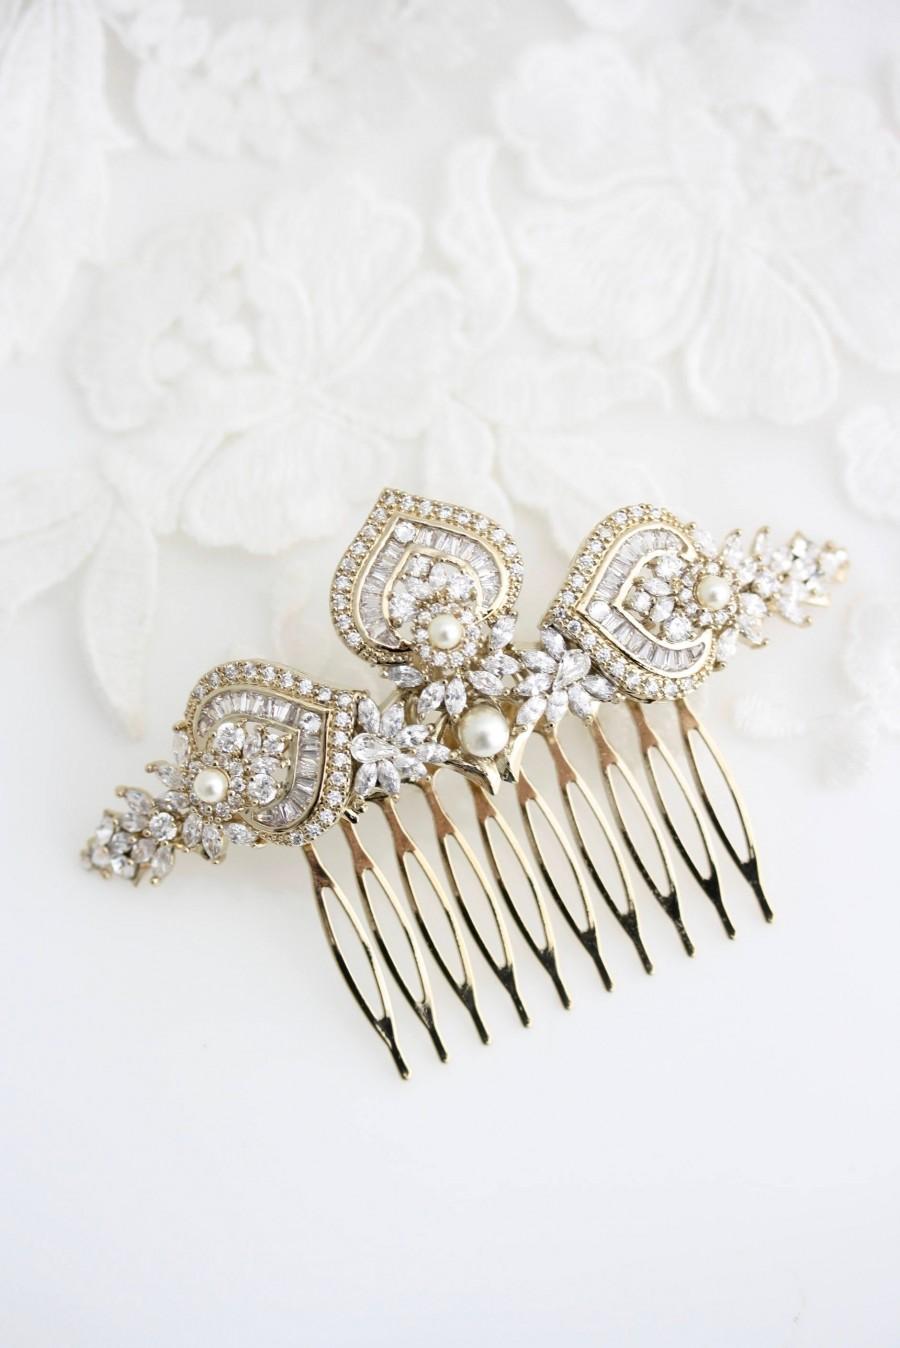 زفاف - Gold Bridal Hair Comb Gold Wedding Headpiece Crystal Hair Comb Yellow Gold Wedding Hair Clip Art Deco Bridal Hair Accessories EVIE L